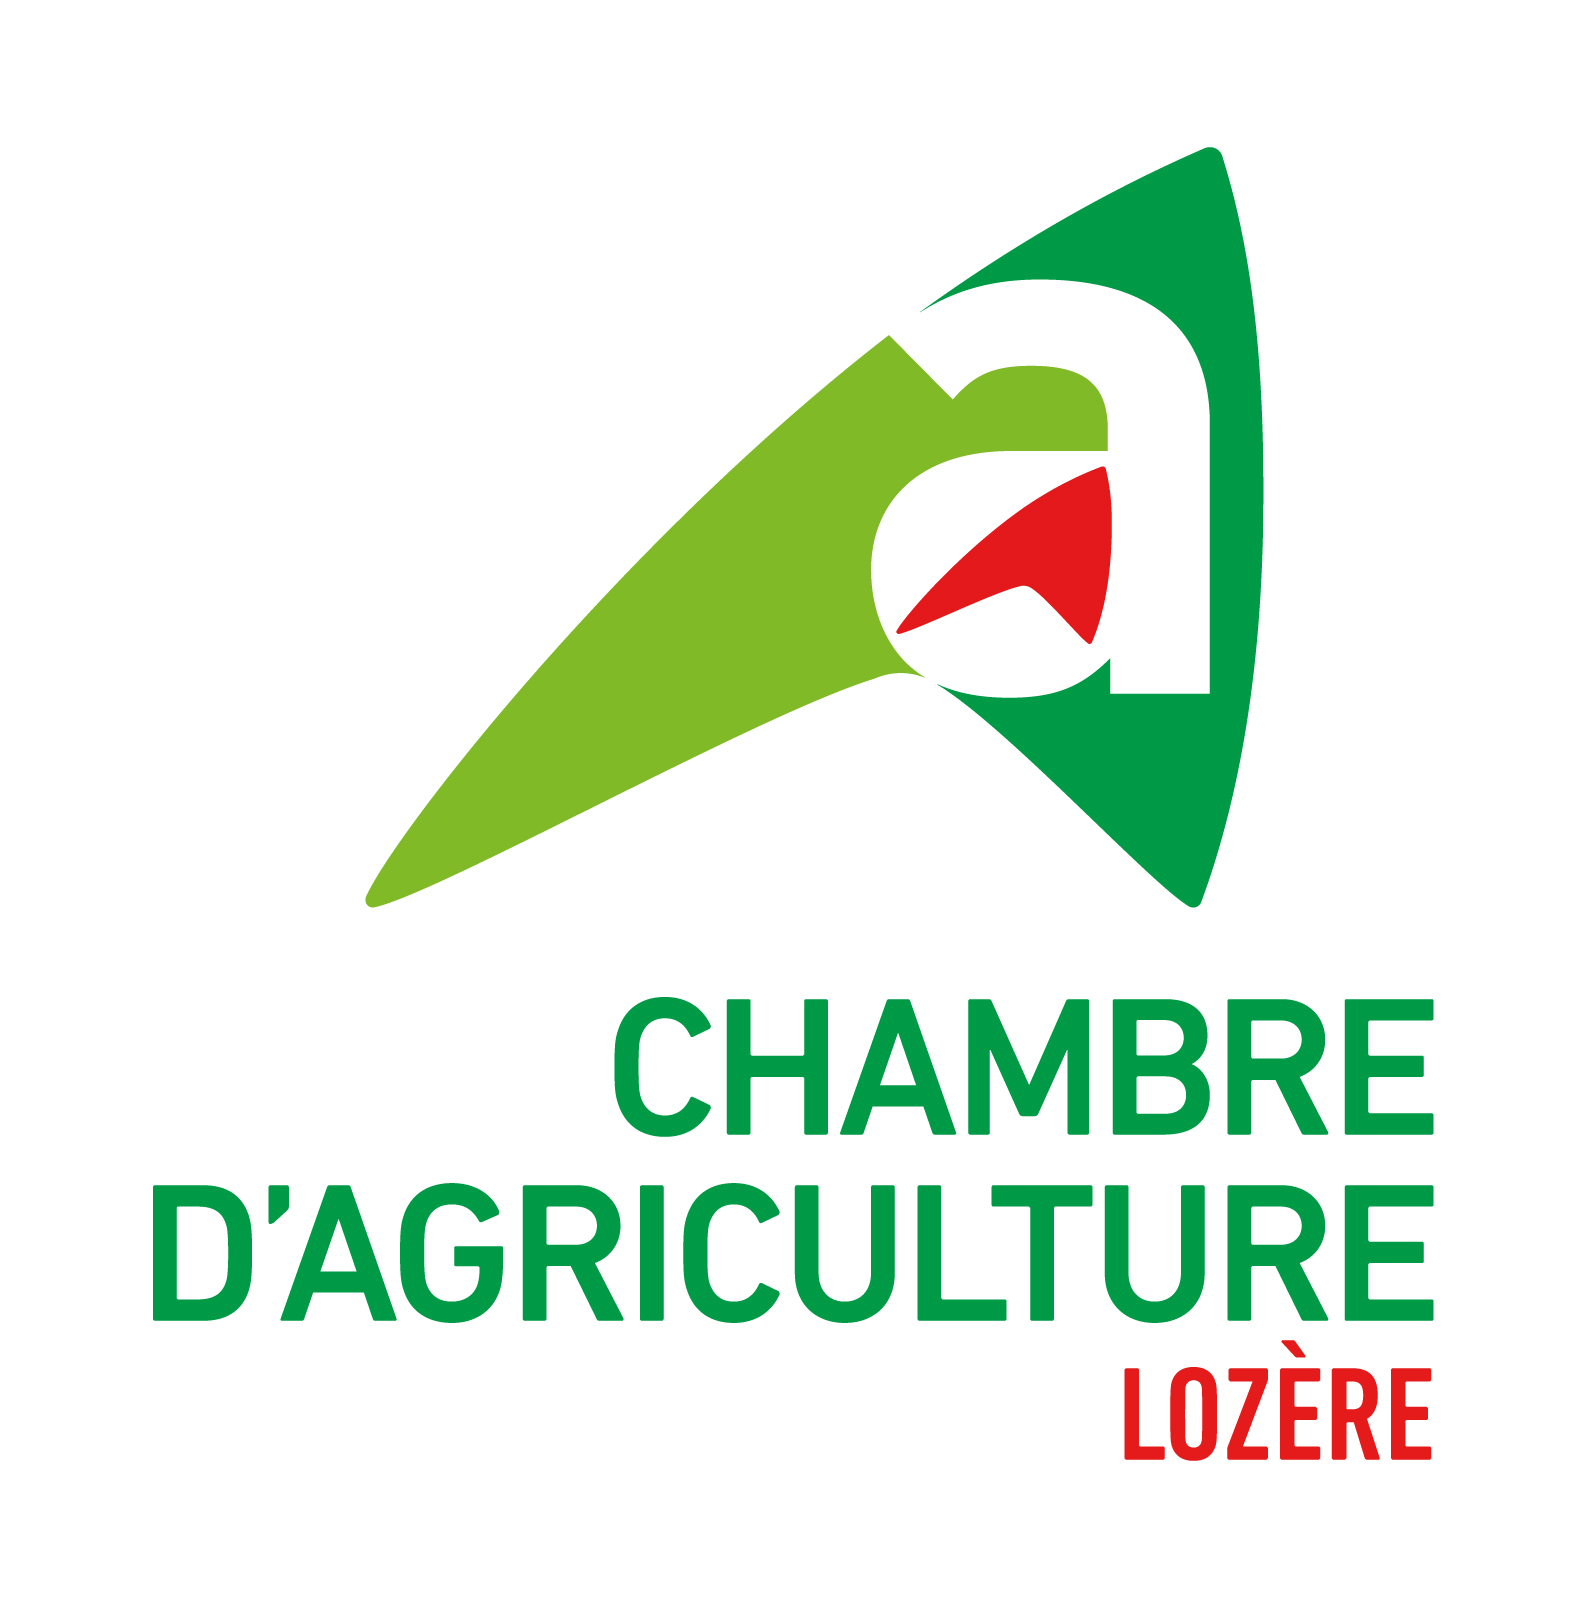 Chambre d'agriculture de la Lozère, retour à la page d'accueil